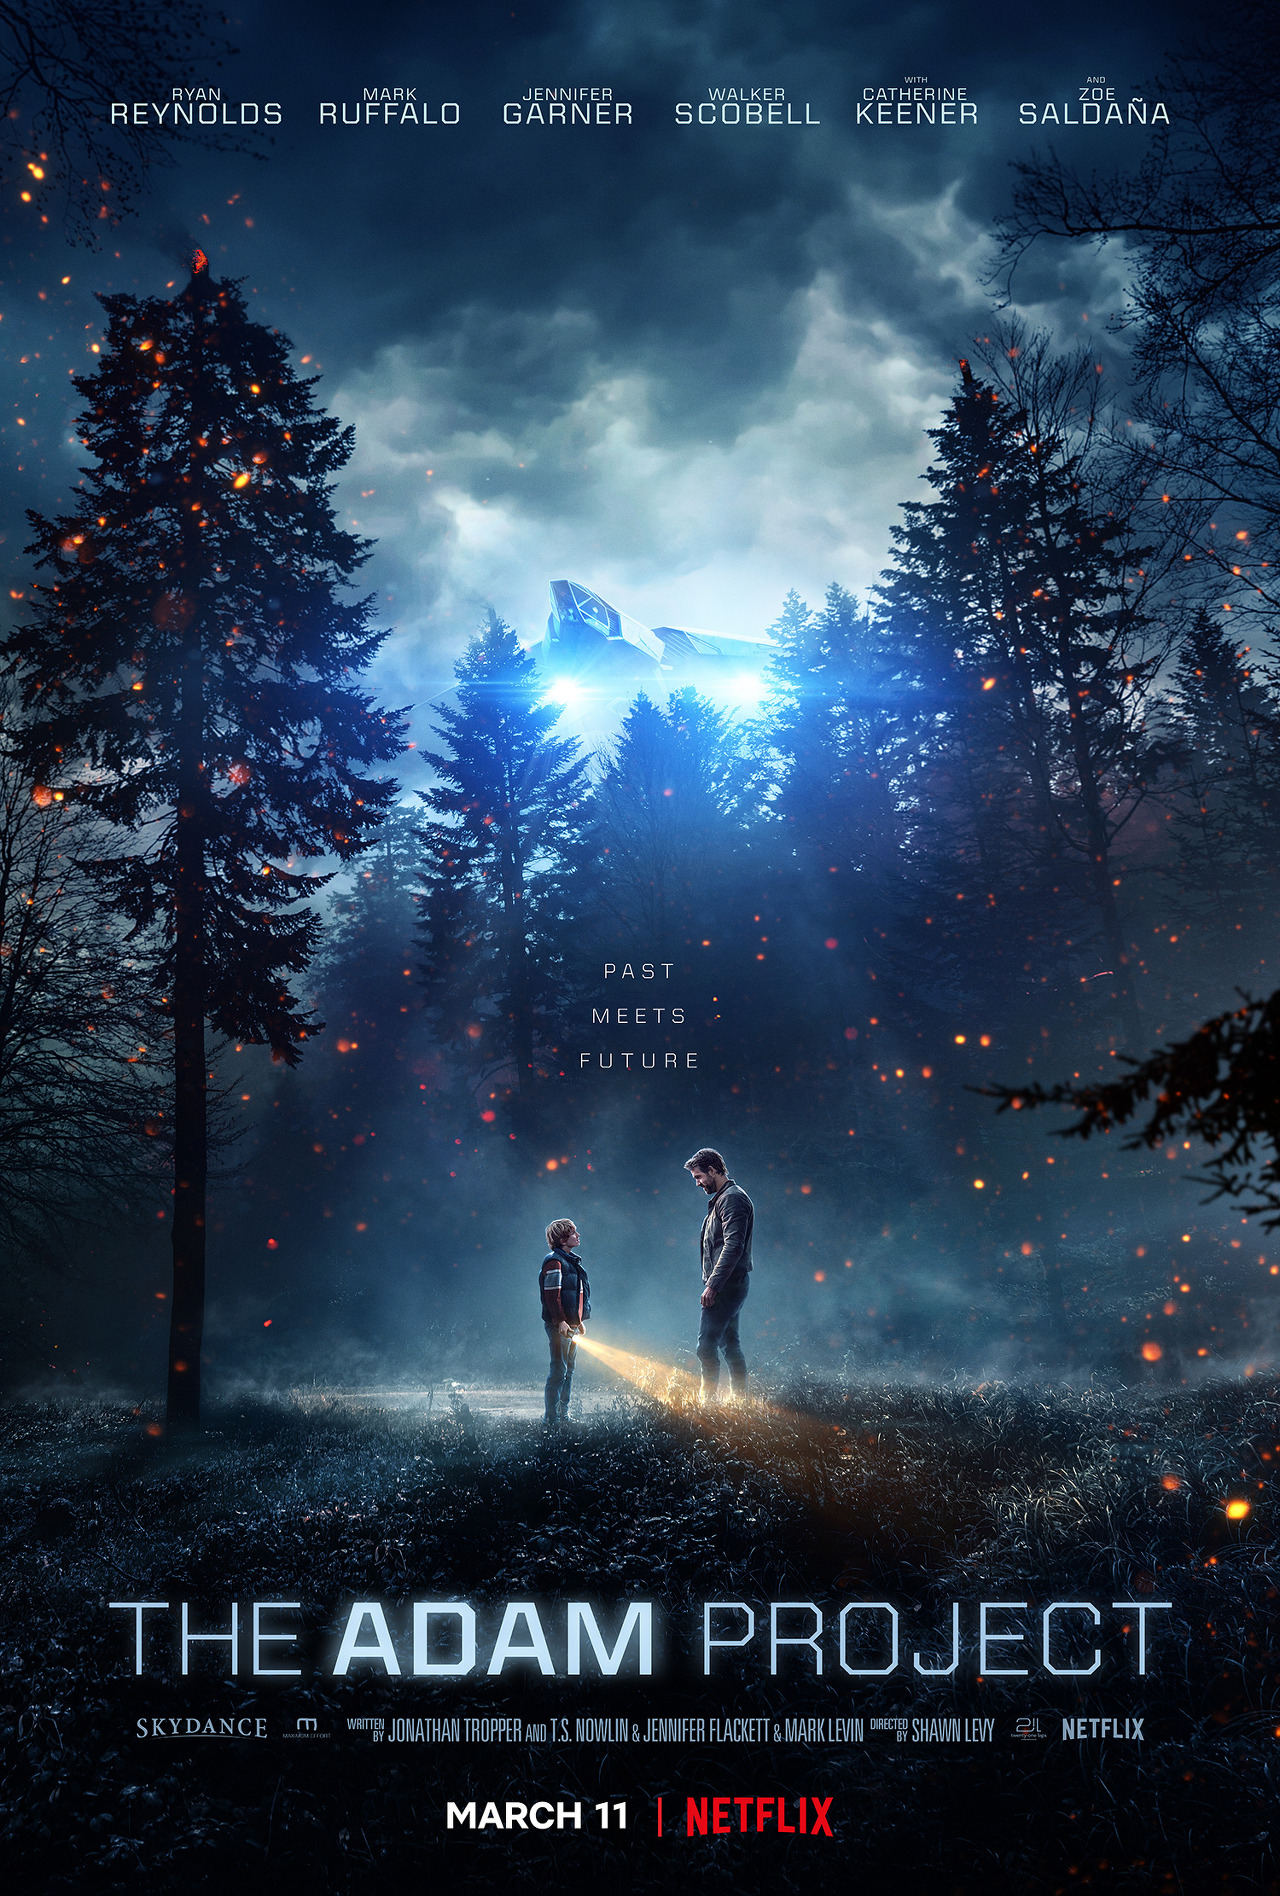 어두운 숲속에서 어릴 적 자기 자신과 만난 남자 모습의 영화 애덤 프로젝트 포스터이다.